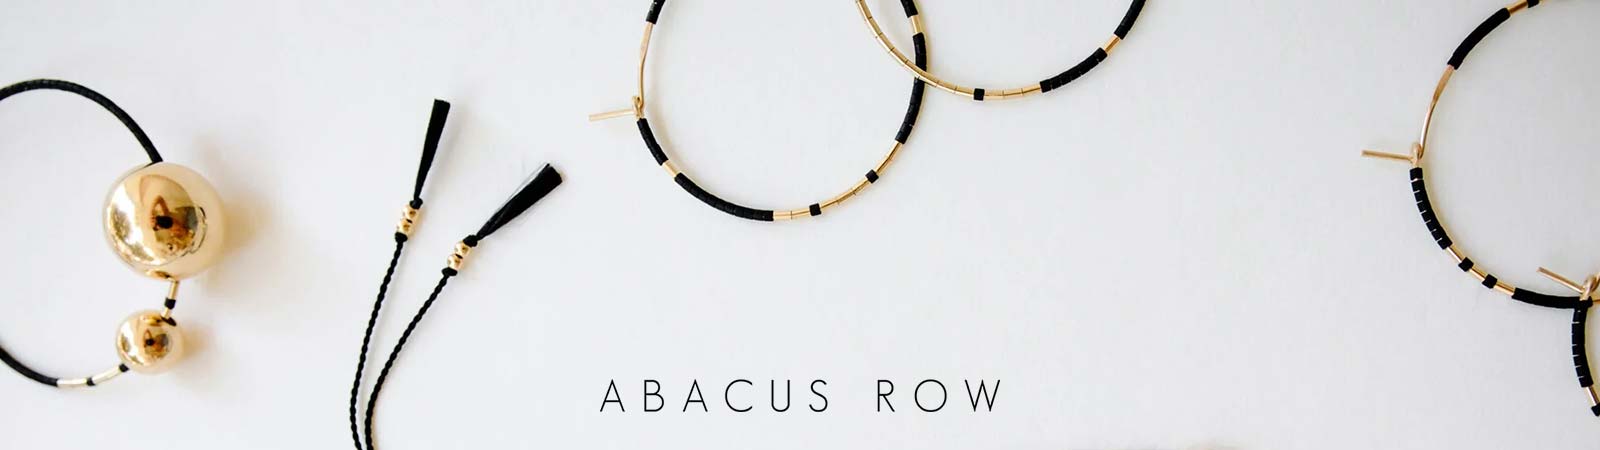 Abacus Row